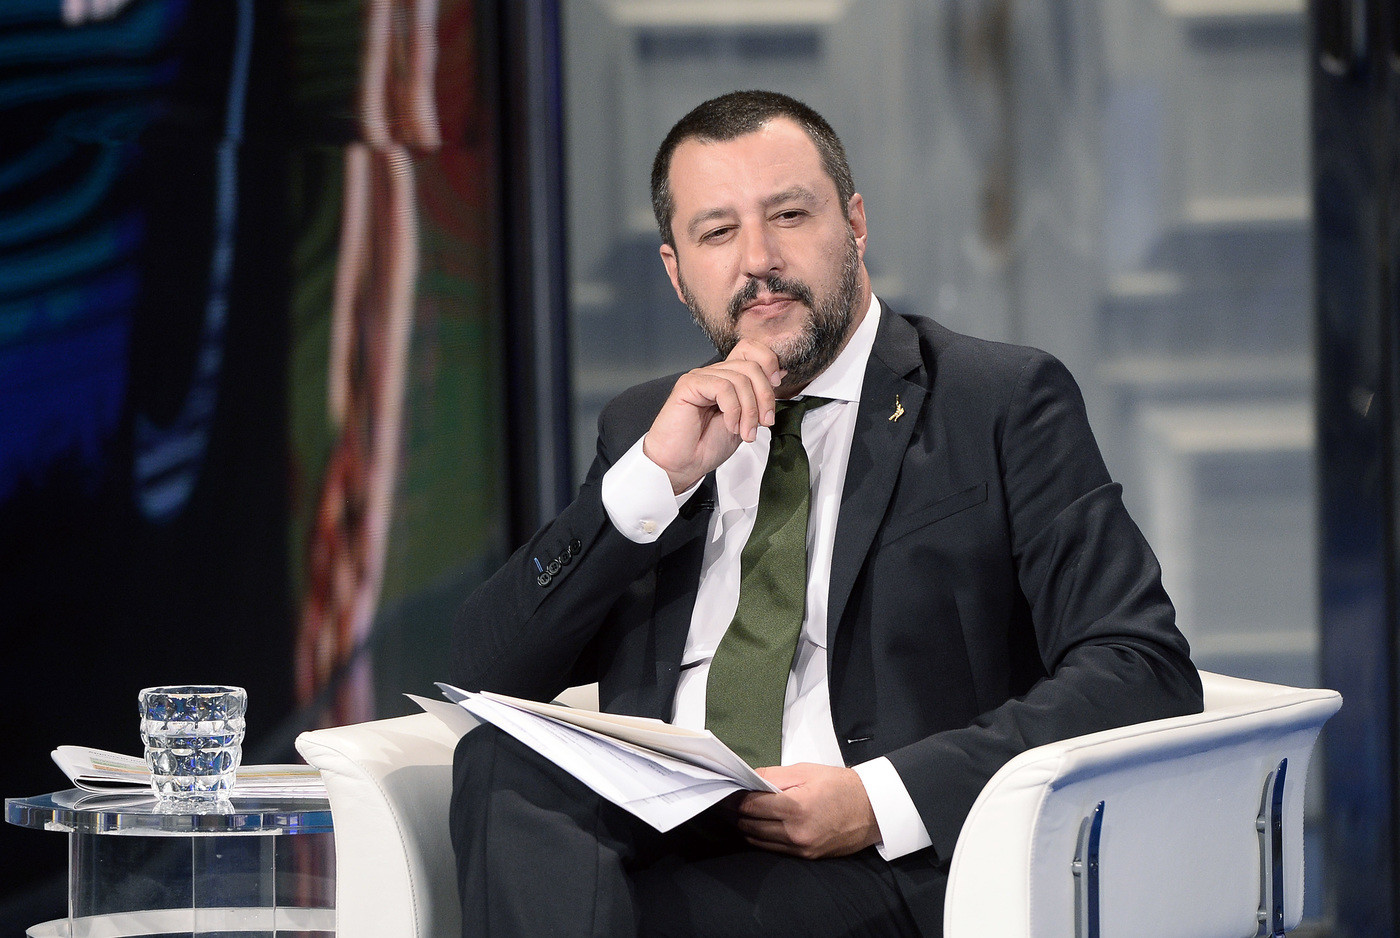 Salvini attacca l’Onu: “Niente lezioncine”. E sulle pensioni: “Quota 100 a 62 anni”